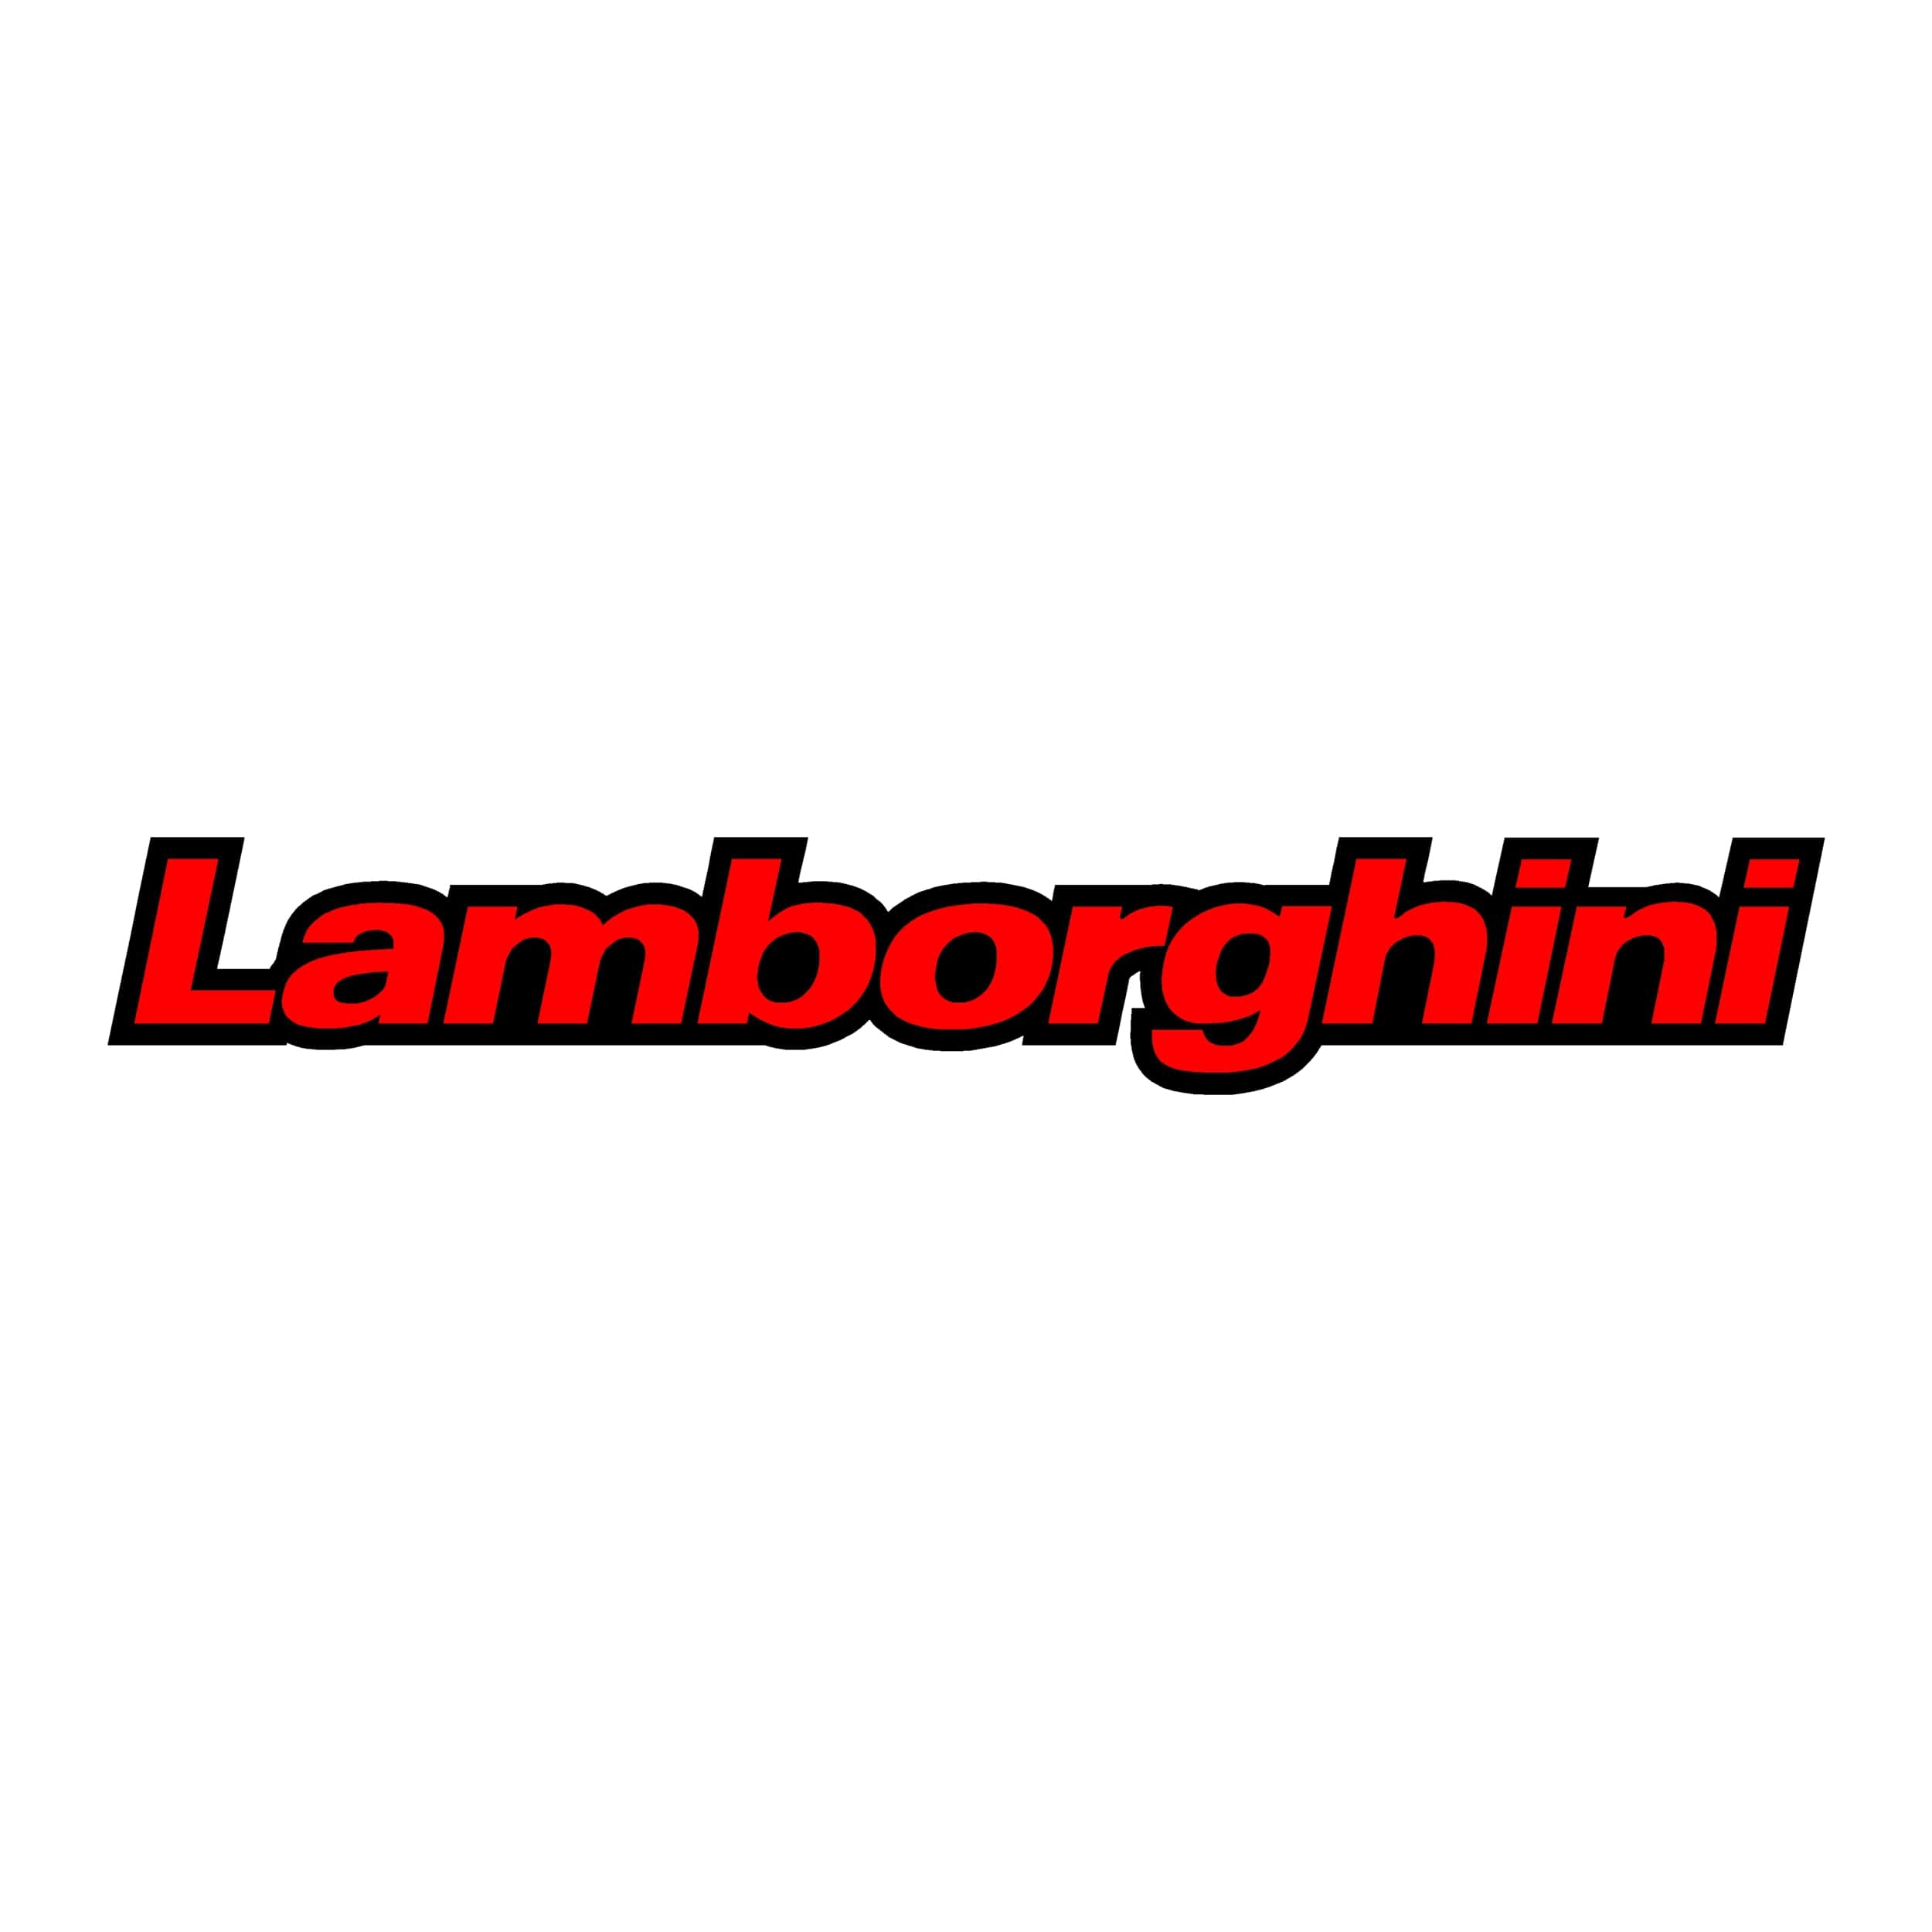 stickers-lamborghini-ref-8-auto-tuning-amortisseur-4x4-tout-terrain-auto-camion-competition-rallye-autocollant-min